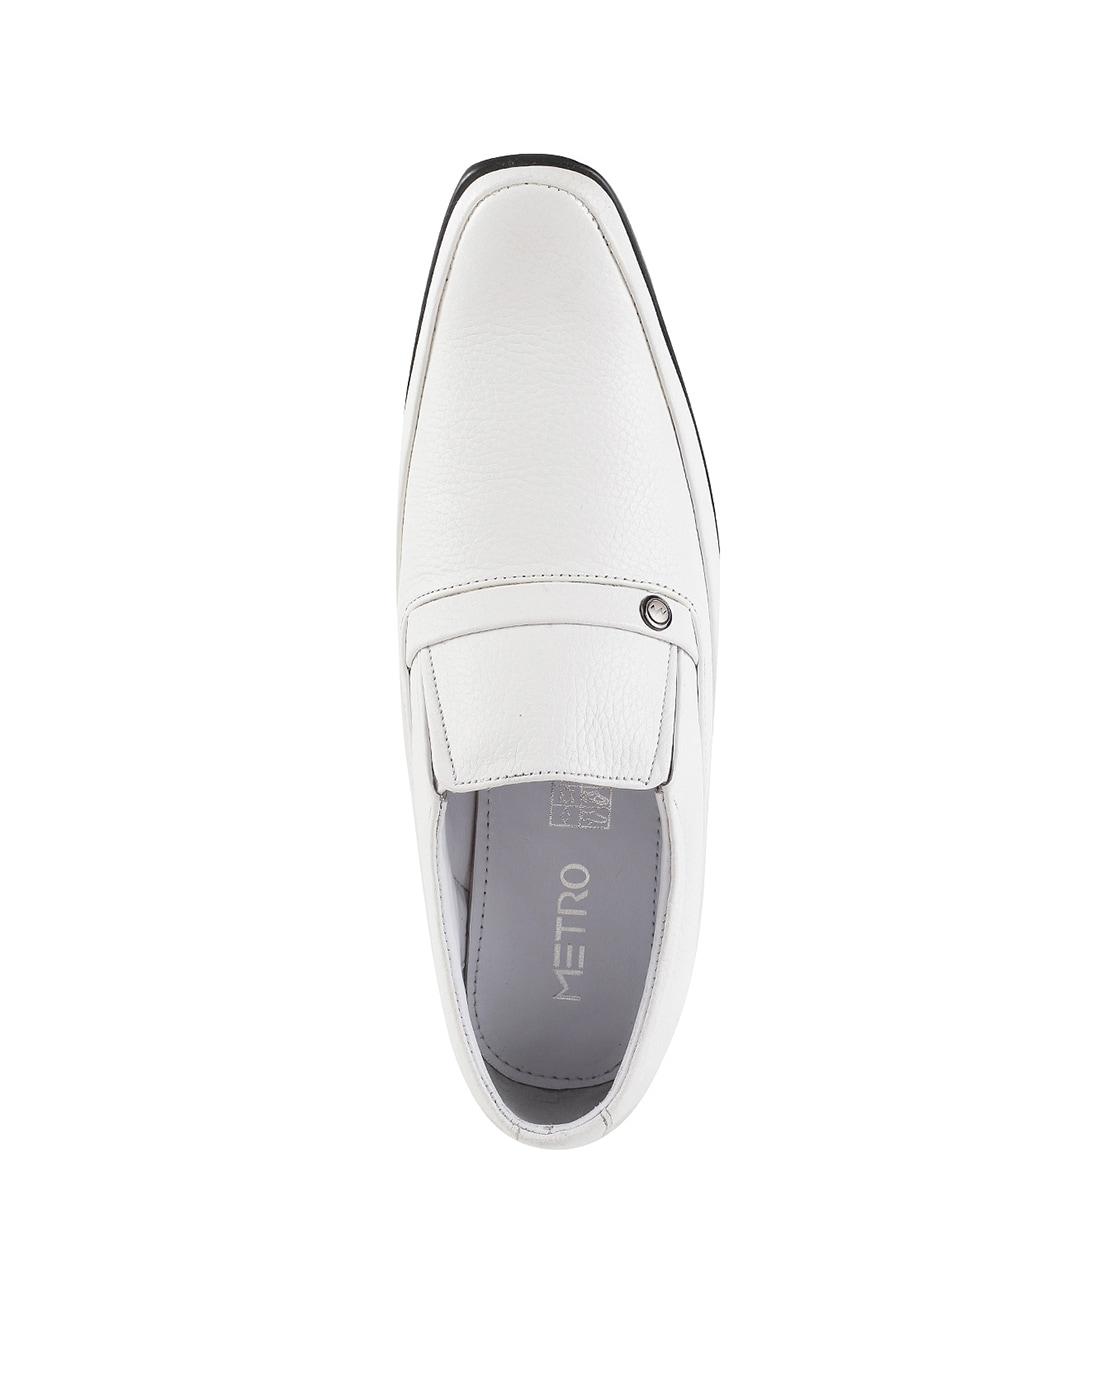 White Colour Formal Shoes Cheap Sale | bellvalefarms.com